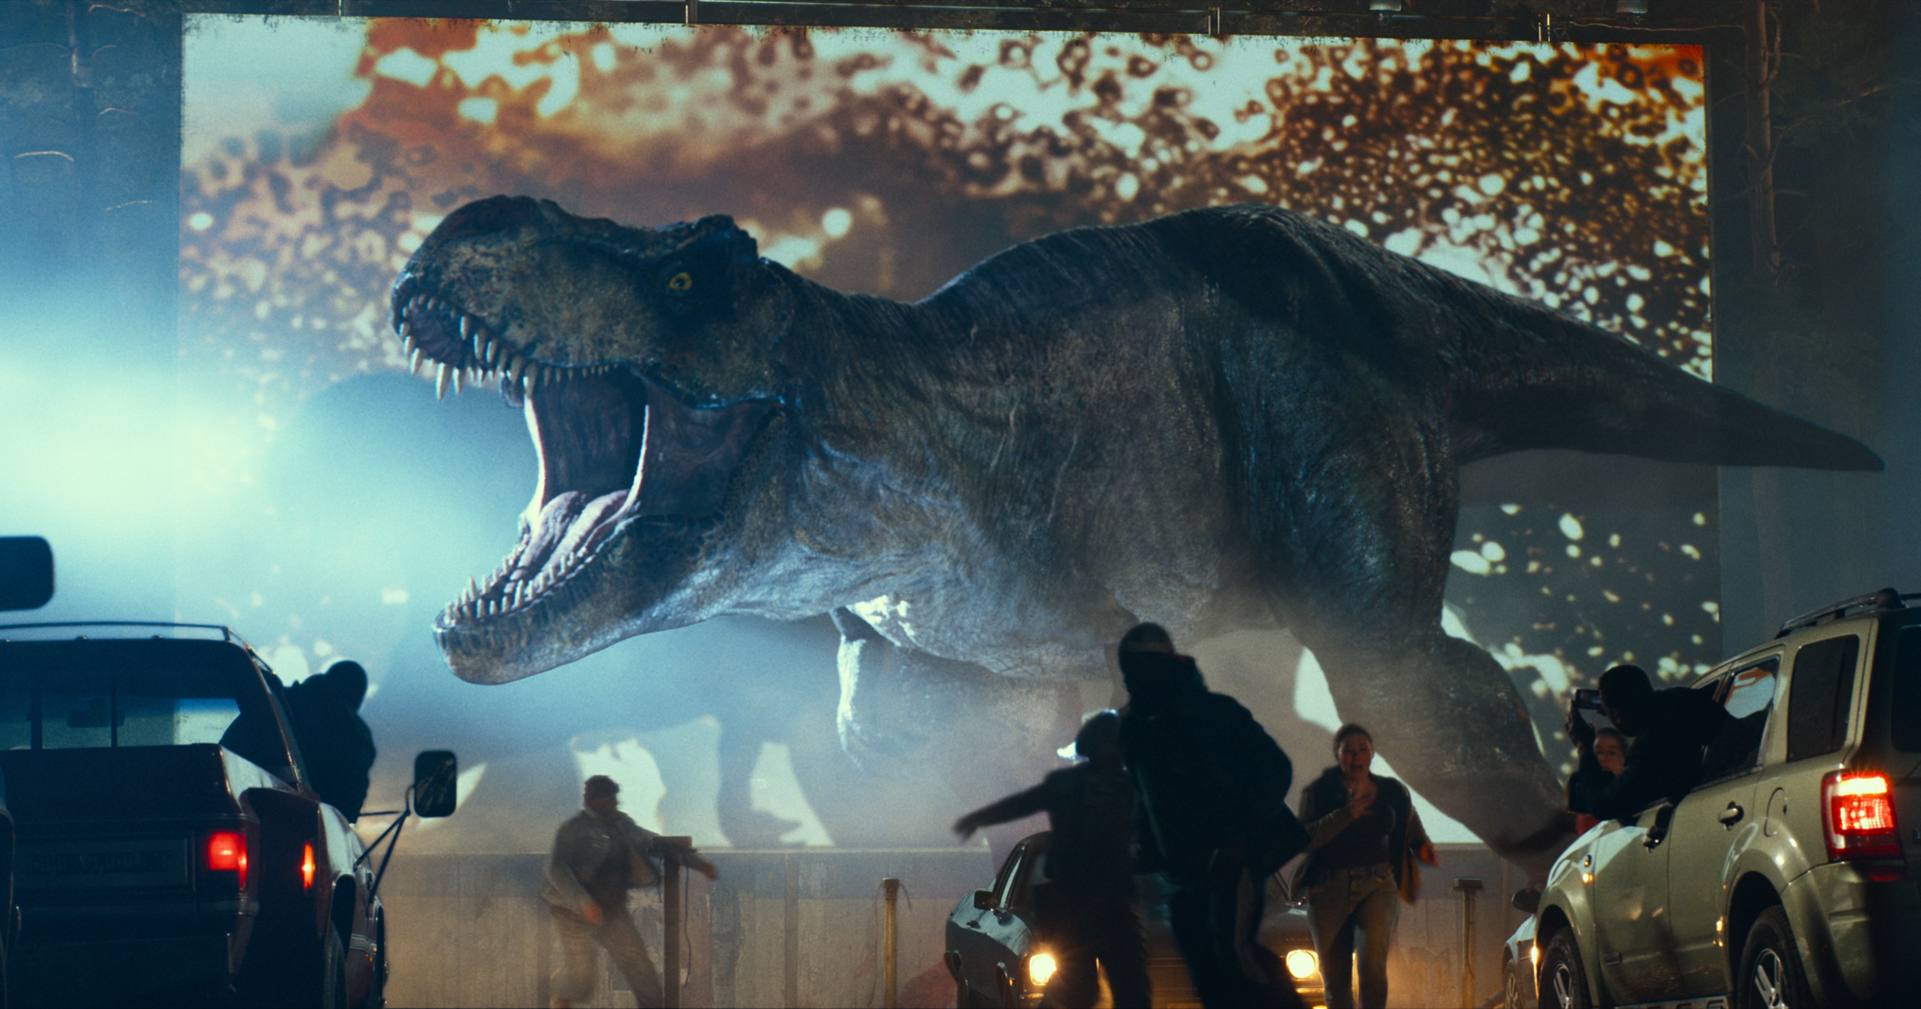 Meer informatie over "Top 10: de gedownloade films - 01/08/2022 - Jurassic World Dominion Nr. 1"